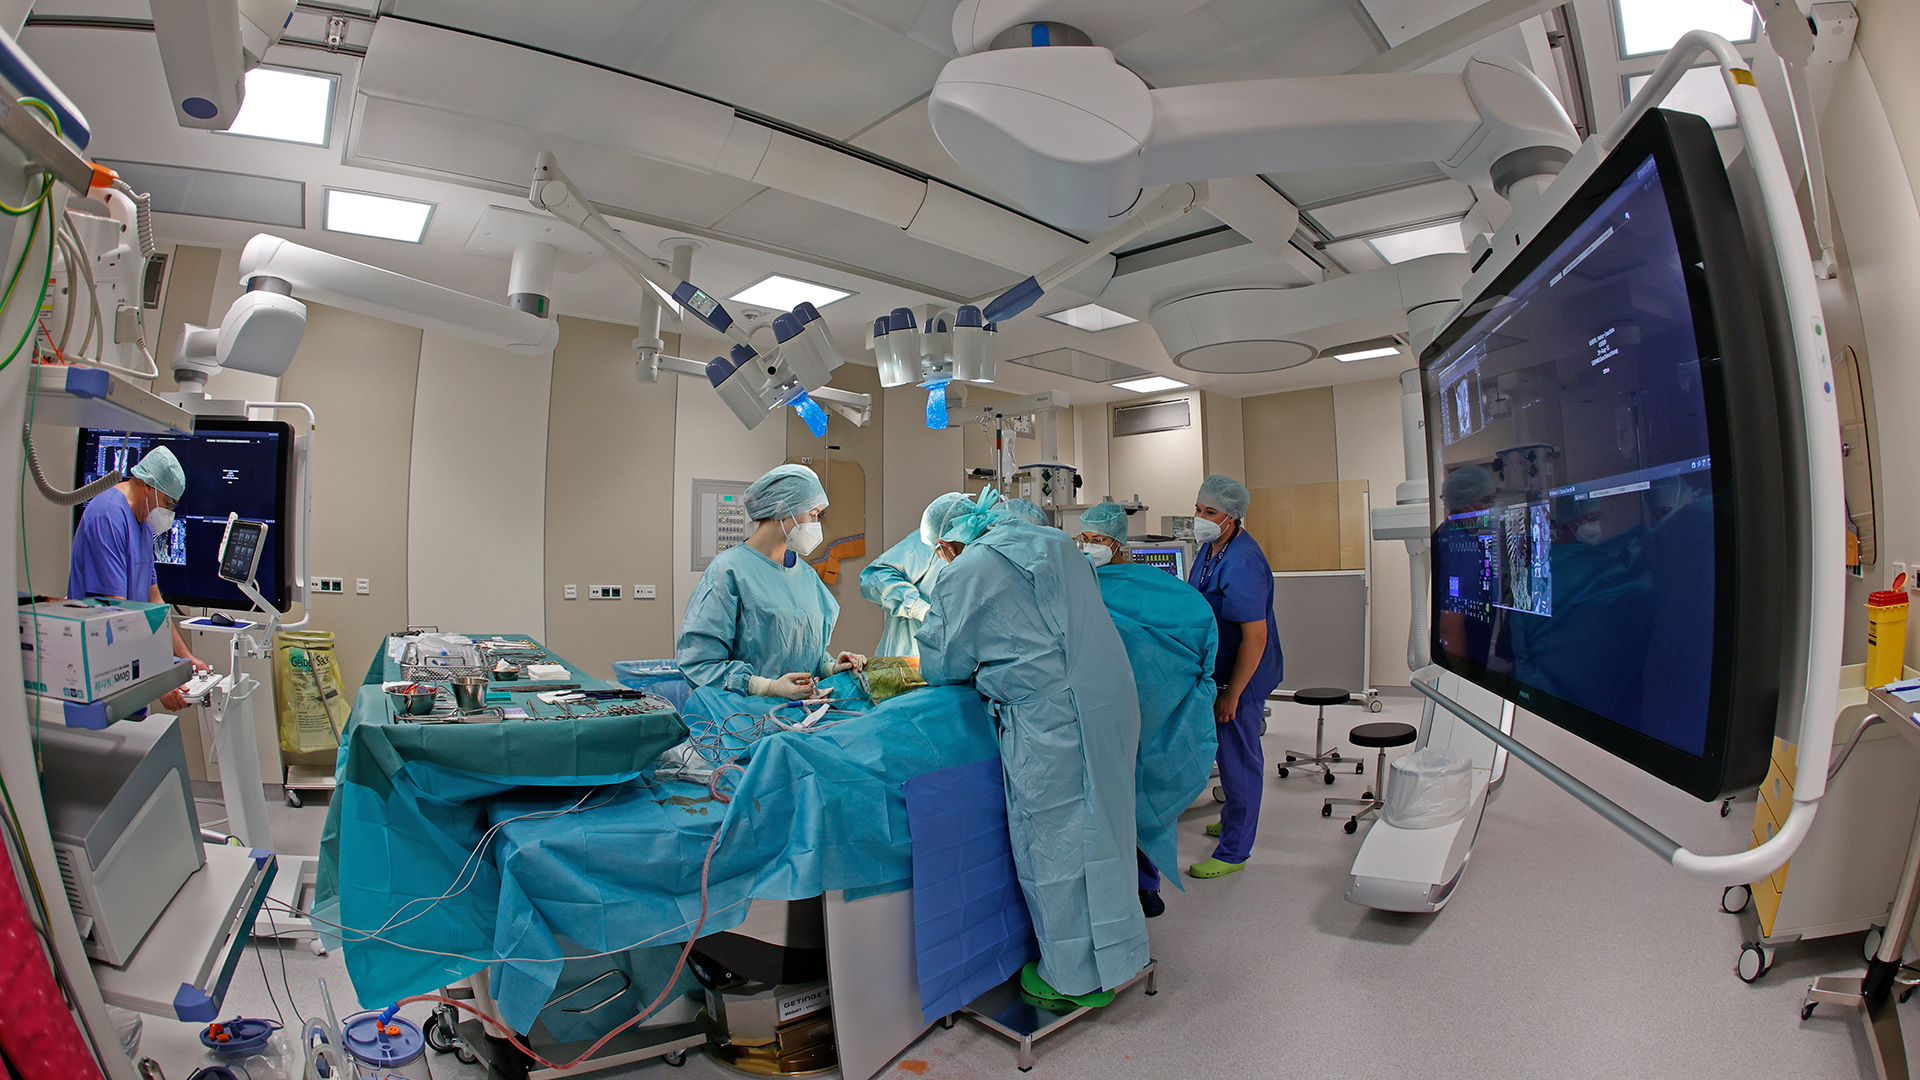 Ein Ãrzteteam operiert im Operationssaal einer Klinik.